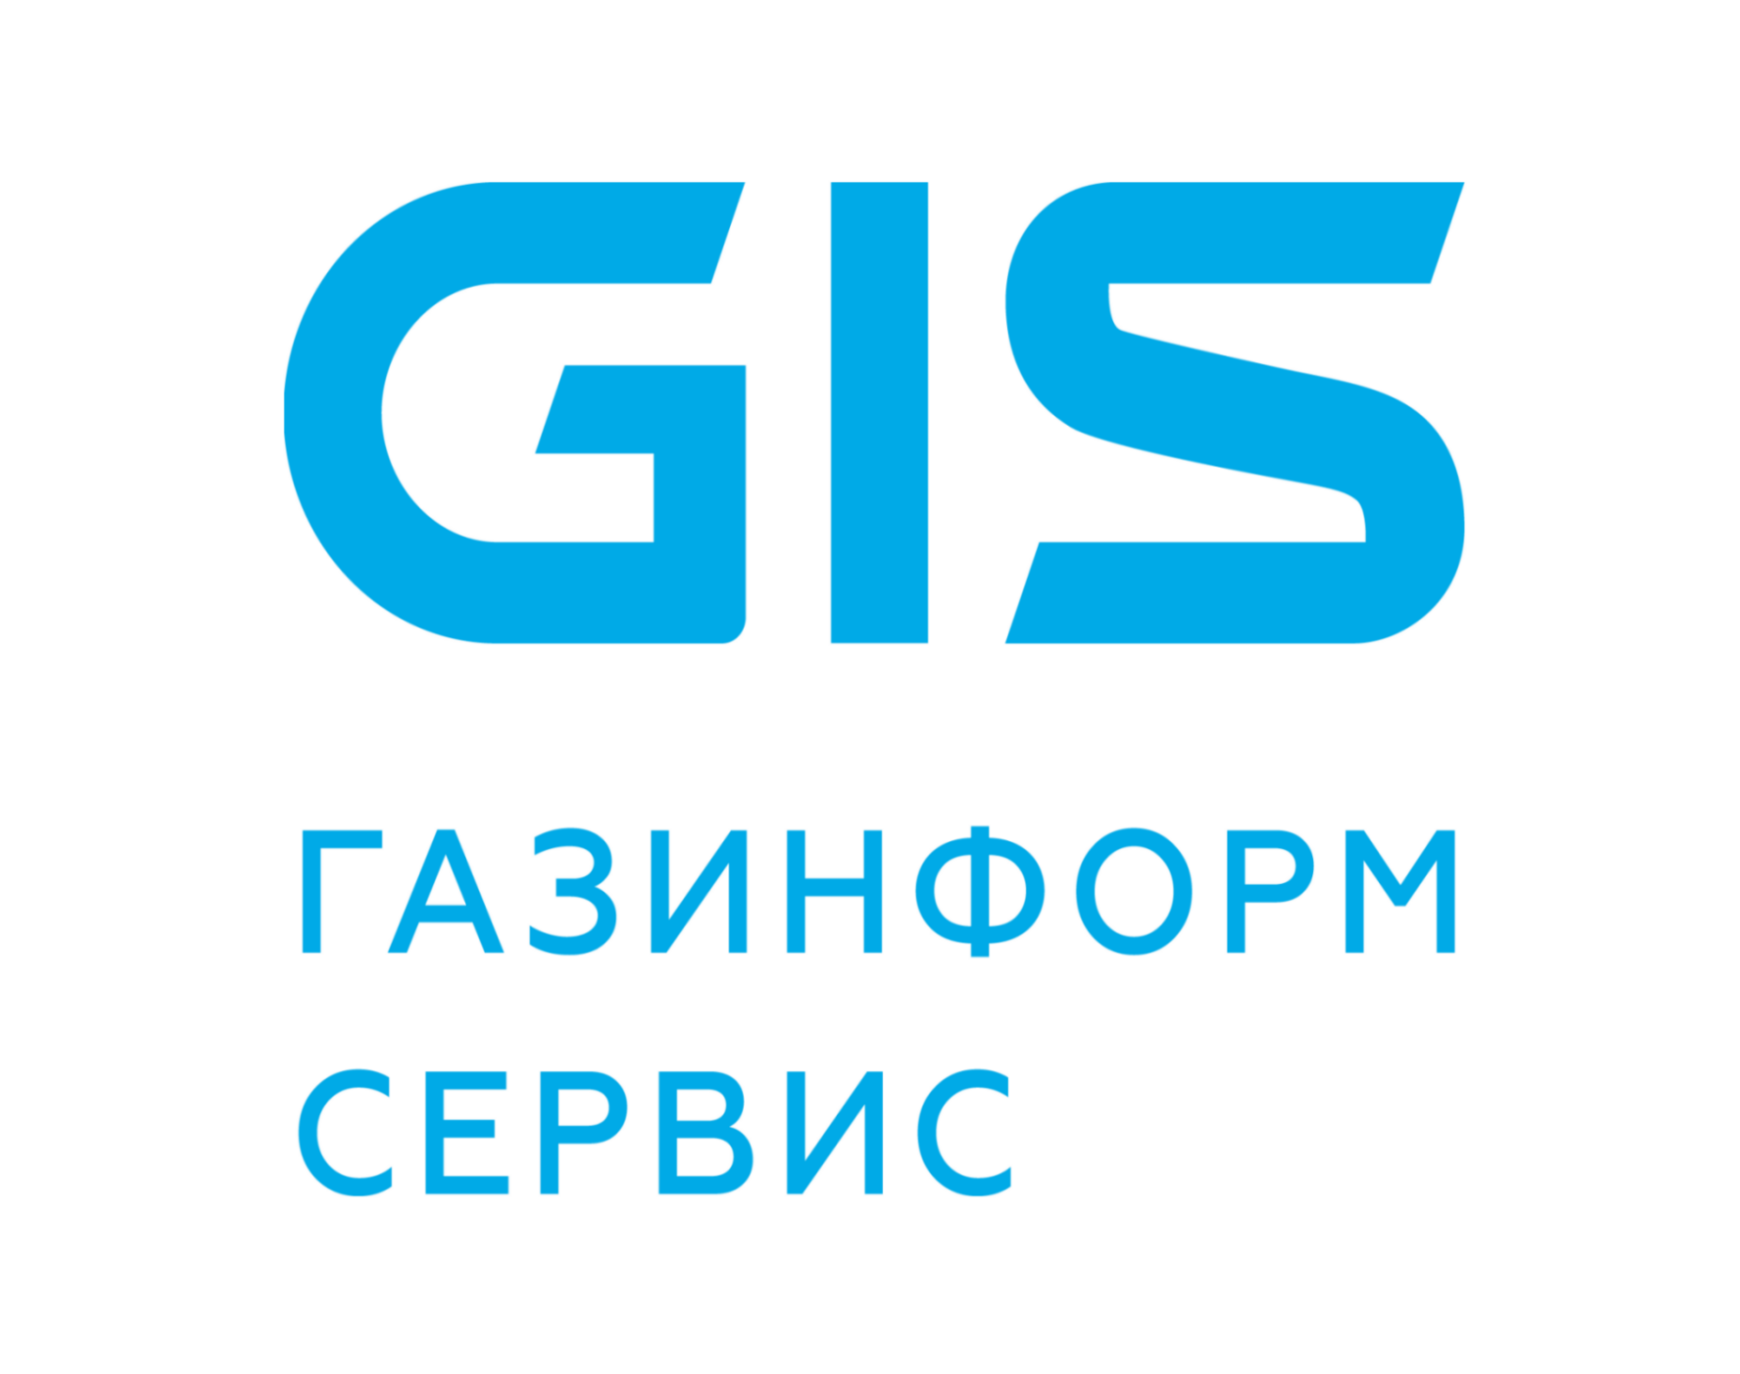 ПК Efros Config Inspector компании «Газинформсервис» совместим с операционной системой РЕД ОС